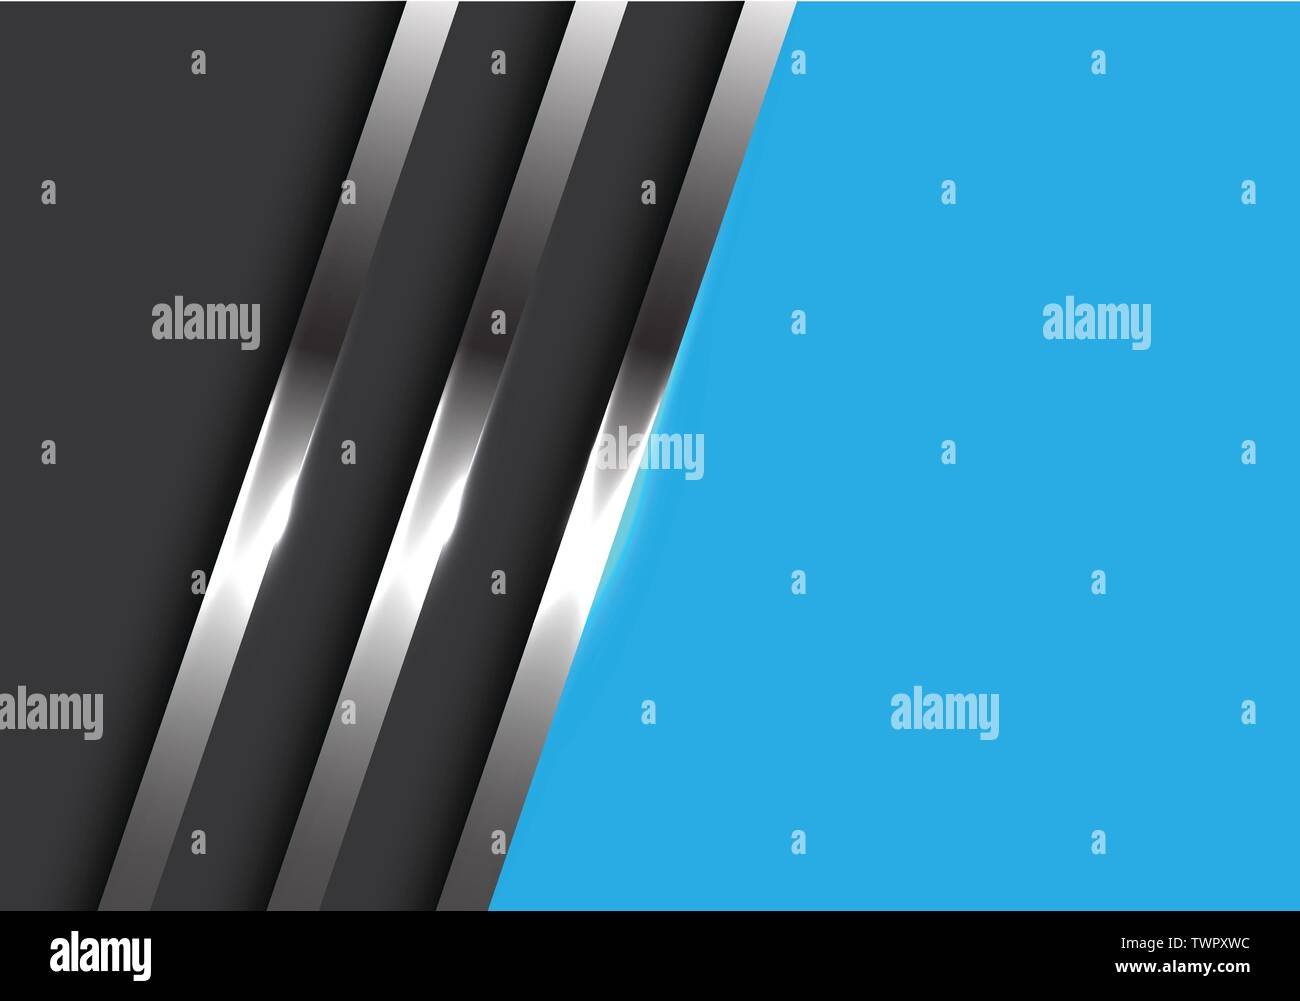 Résumé des conduites métalliques sur gris avec un espace blanc bleu moderne design futuristic background vector illustration. Illustration de Vecteur